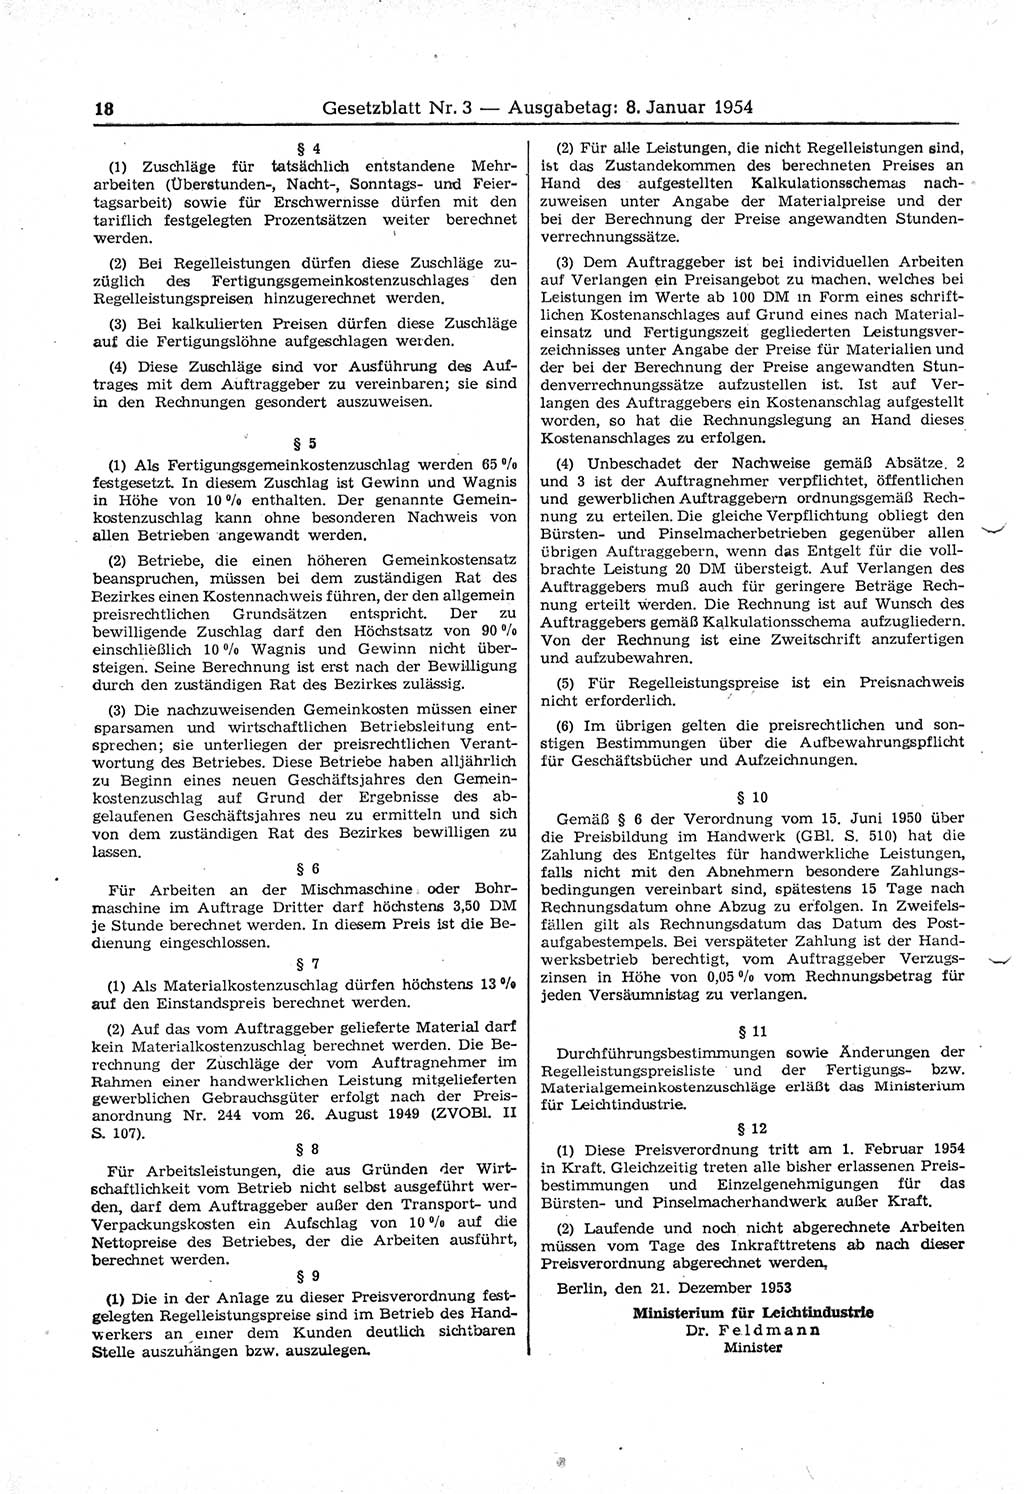 Gesetzblatt (GBl.) der Deutschen Demokratischen Republik (DDR) 1954, Seite 18 (GBl. DDR 1954, S. 18)